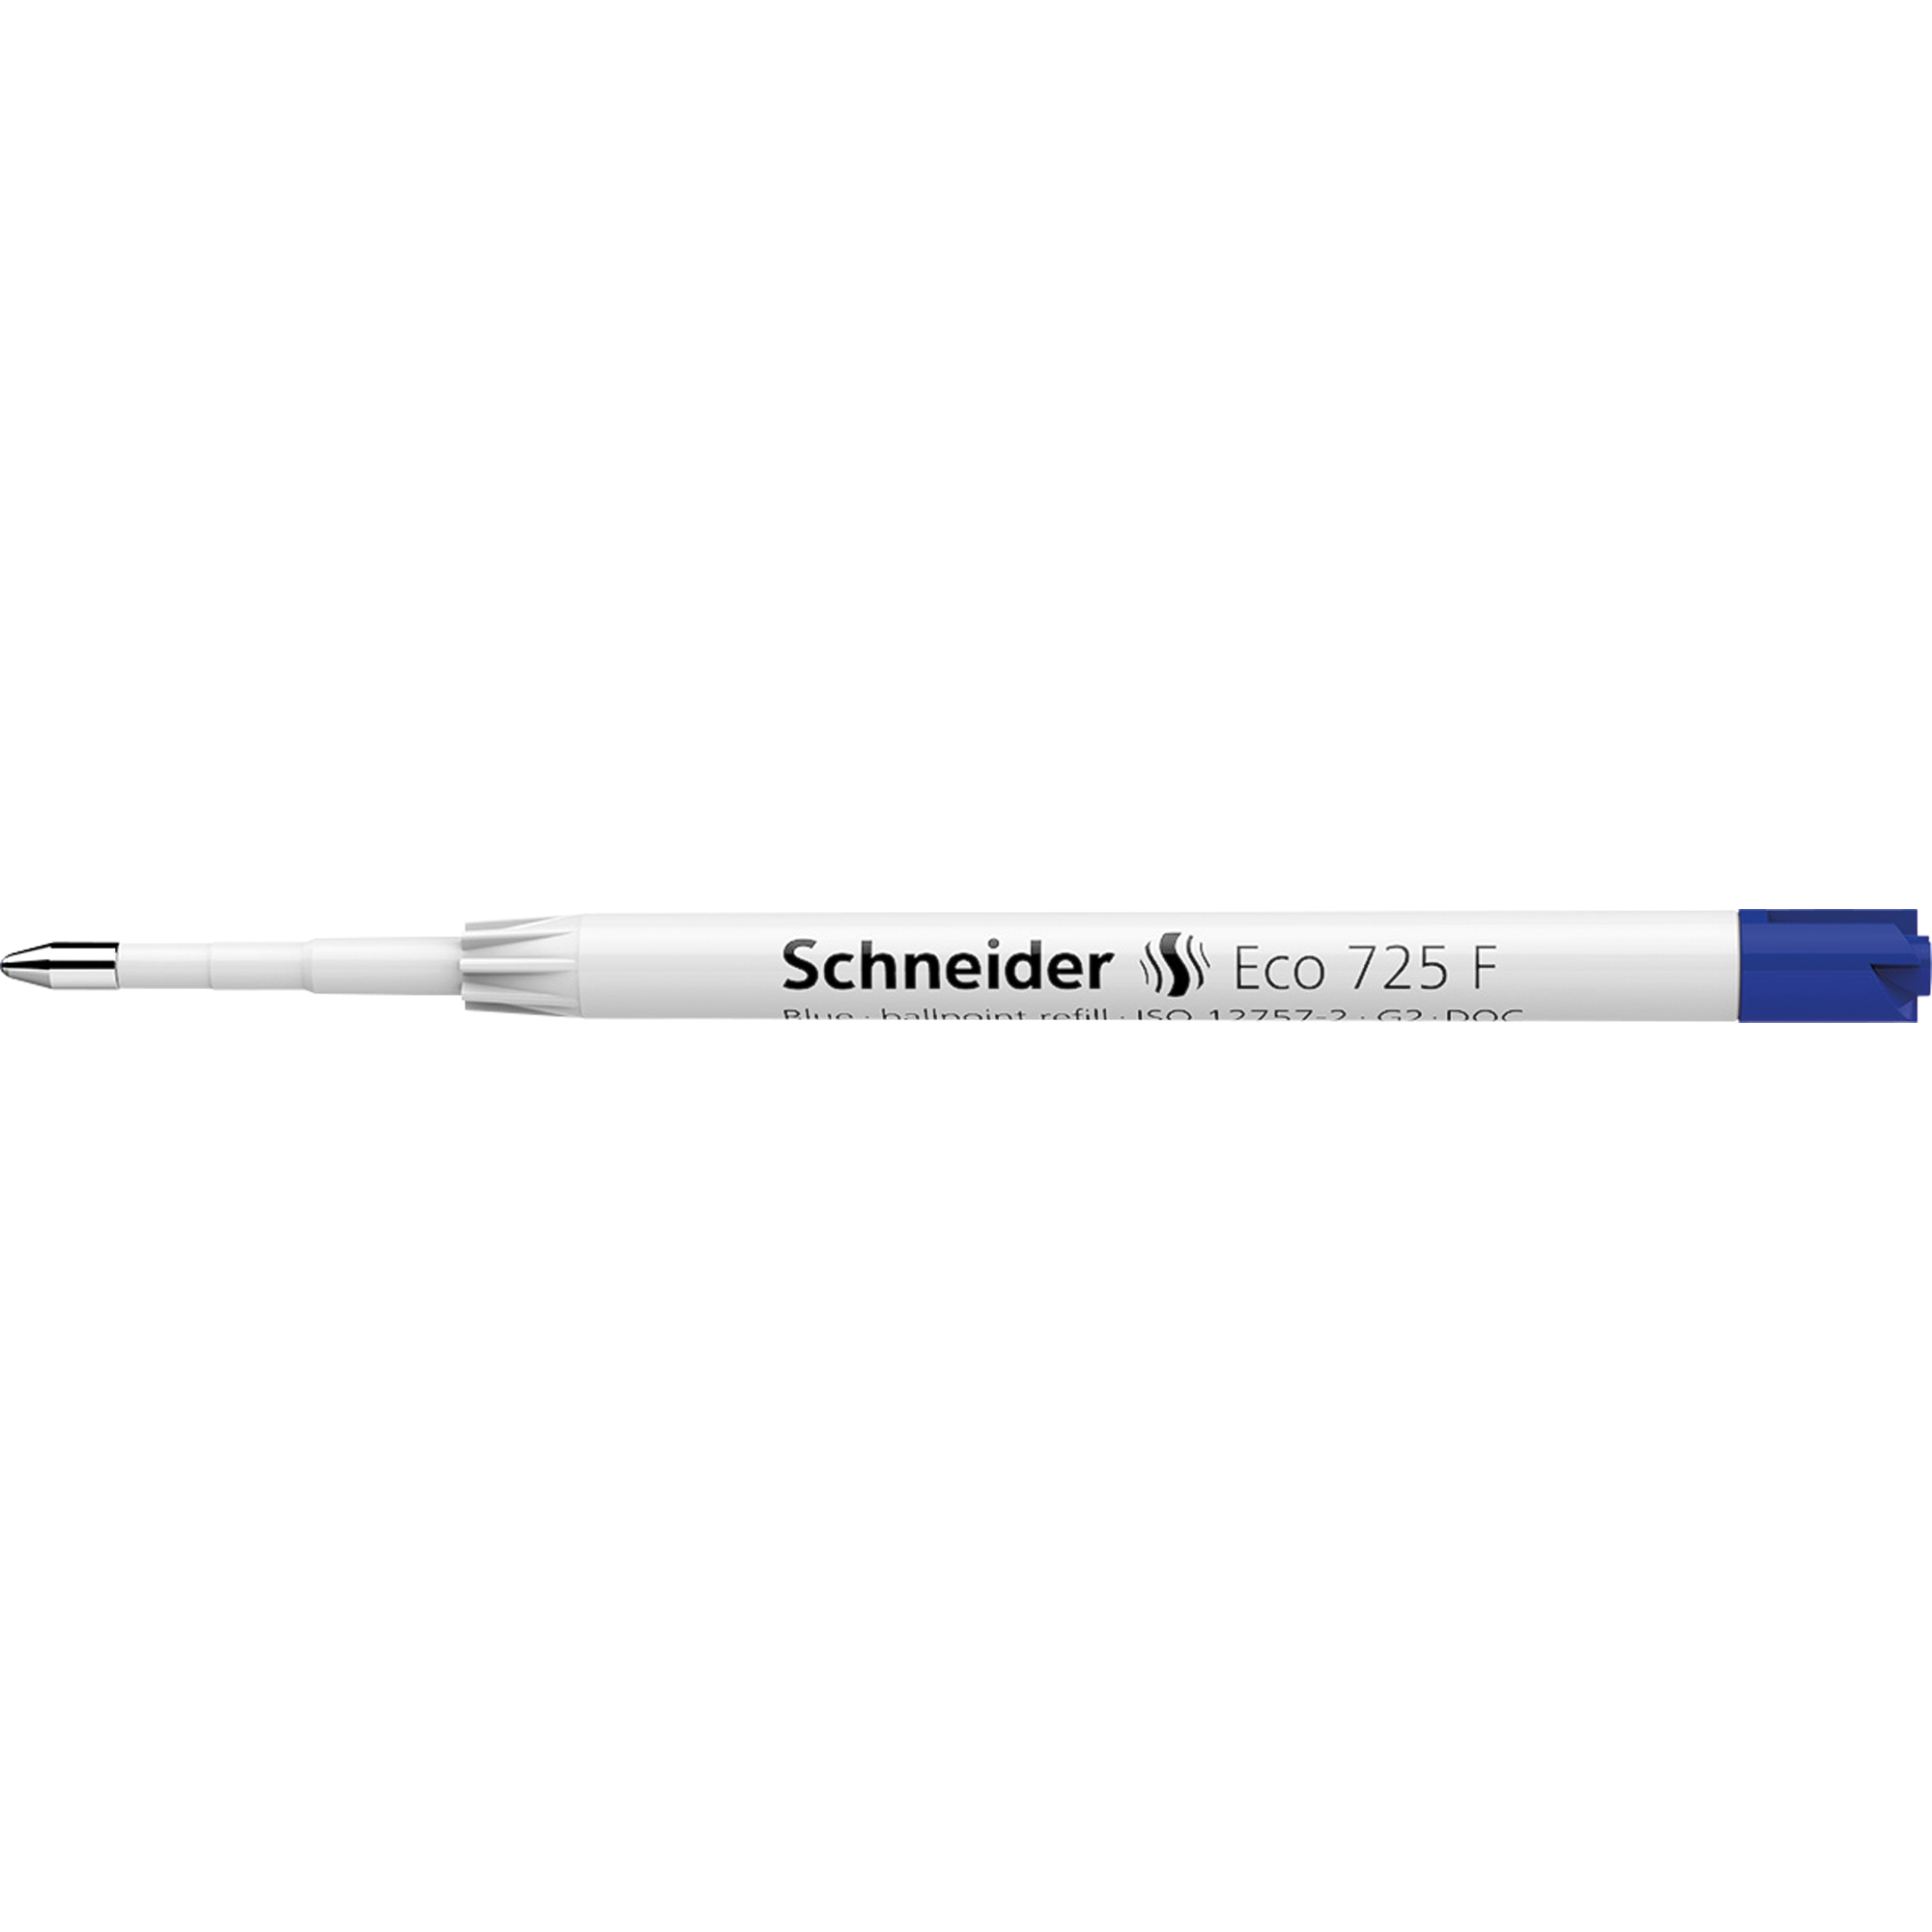 Schneider Mine Kugel ECO 725 F Großraum dokuecht blau